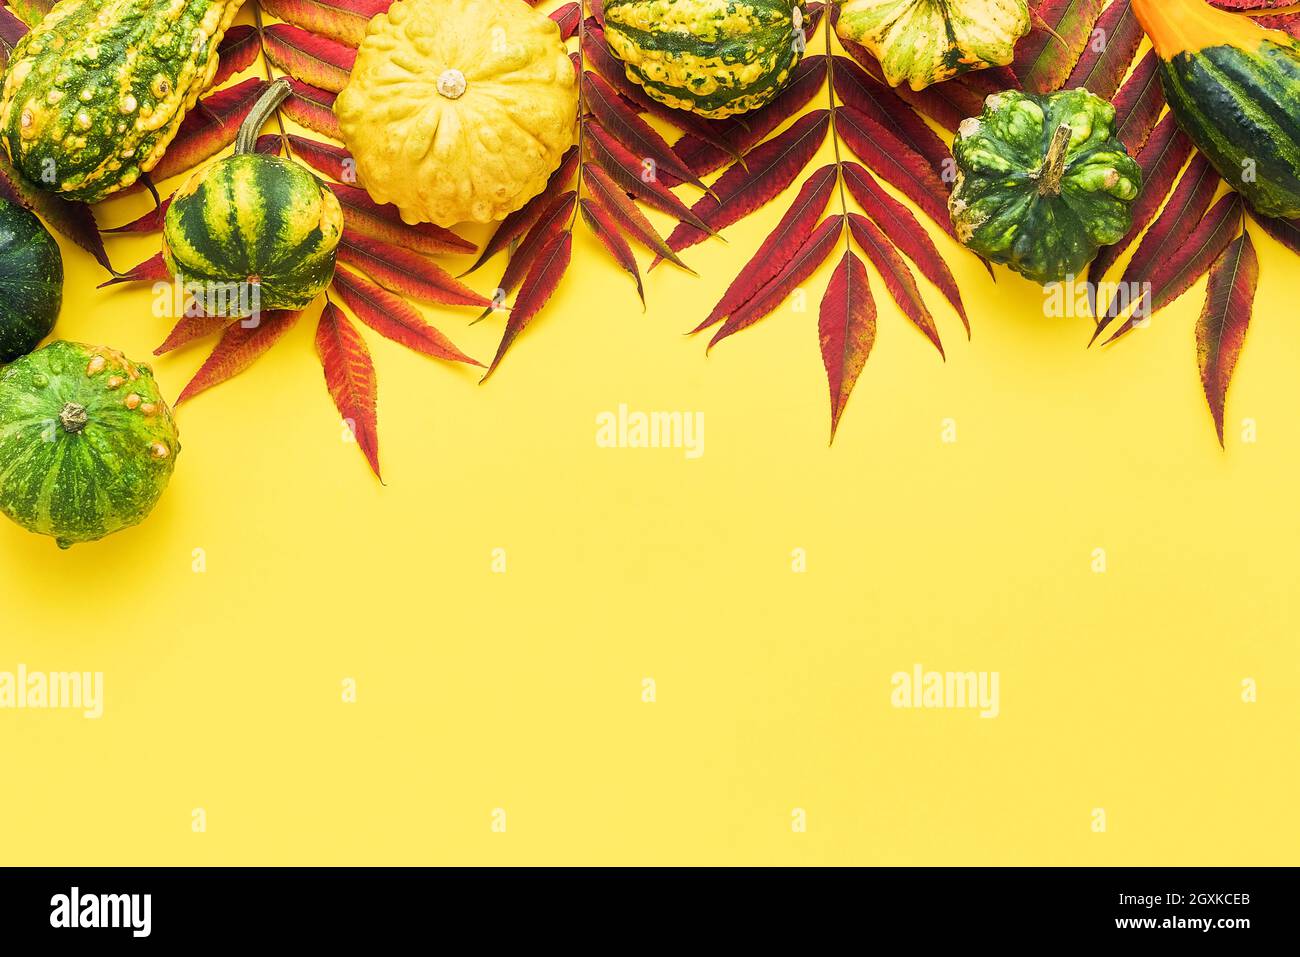 Herbstlicher Hintergrund mit Kürbissen und bunten Blättern auf hellgelbem Hintergrund. Happy Thanksgiving Day und Erntekonzept. Flach liegend, Kopierplatz Stockfoto